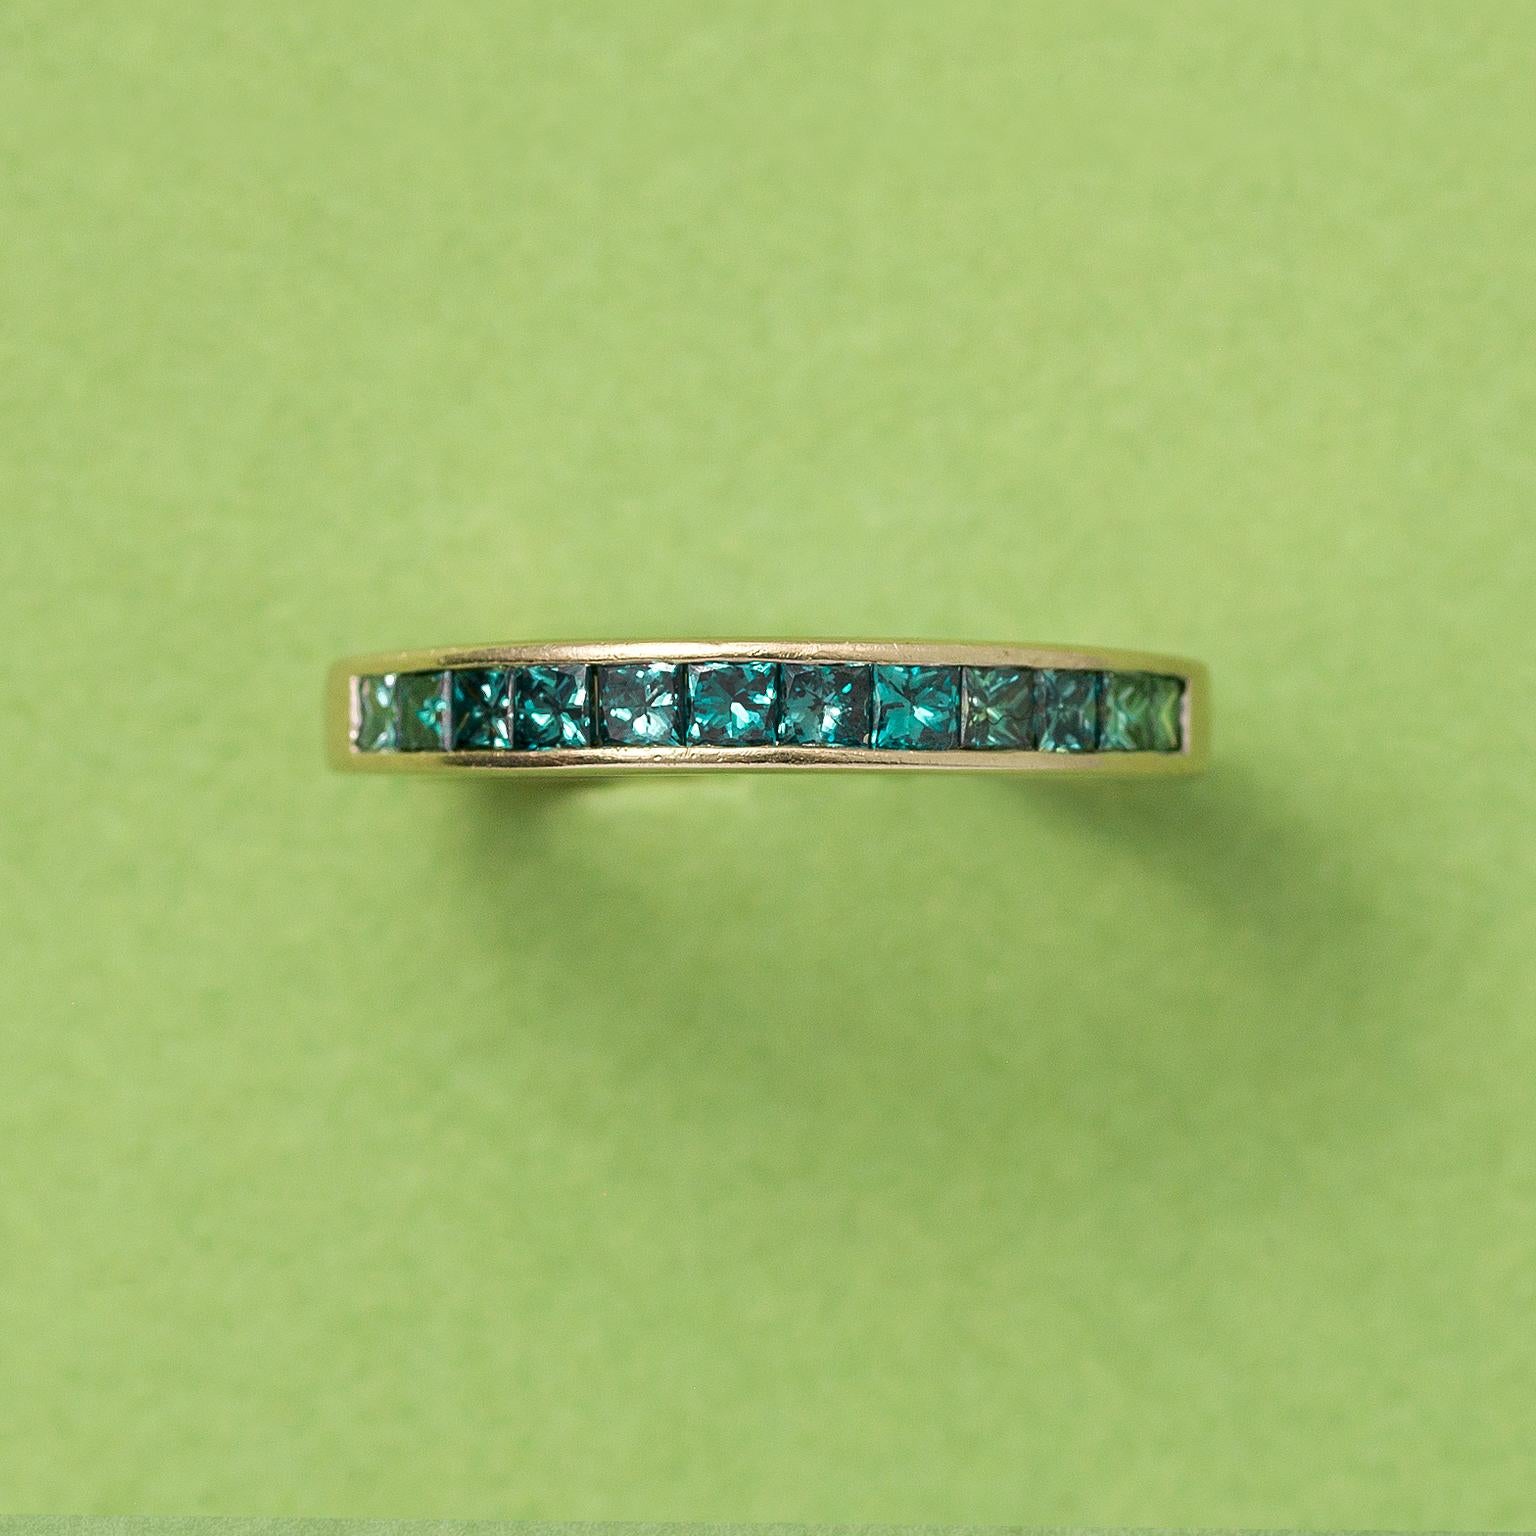 Bague en or blanc 14 carats avec 12 diamants de taille princesse de couleur bleu clair traités (0,72 carat au total) sertis dans une monture à rails

poids : 3,70 grammes
taille de l'anneau : 17+ mm / 6 ½ US
largeur : 3.3 - 2.5mm